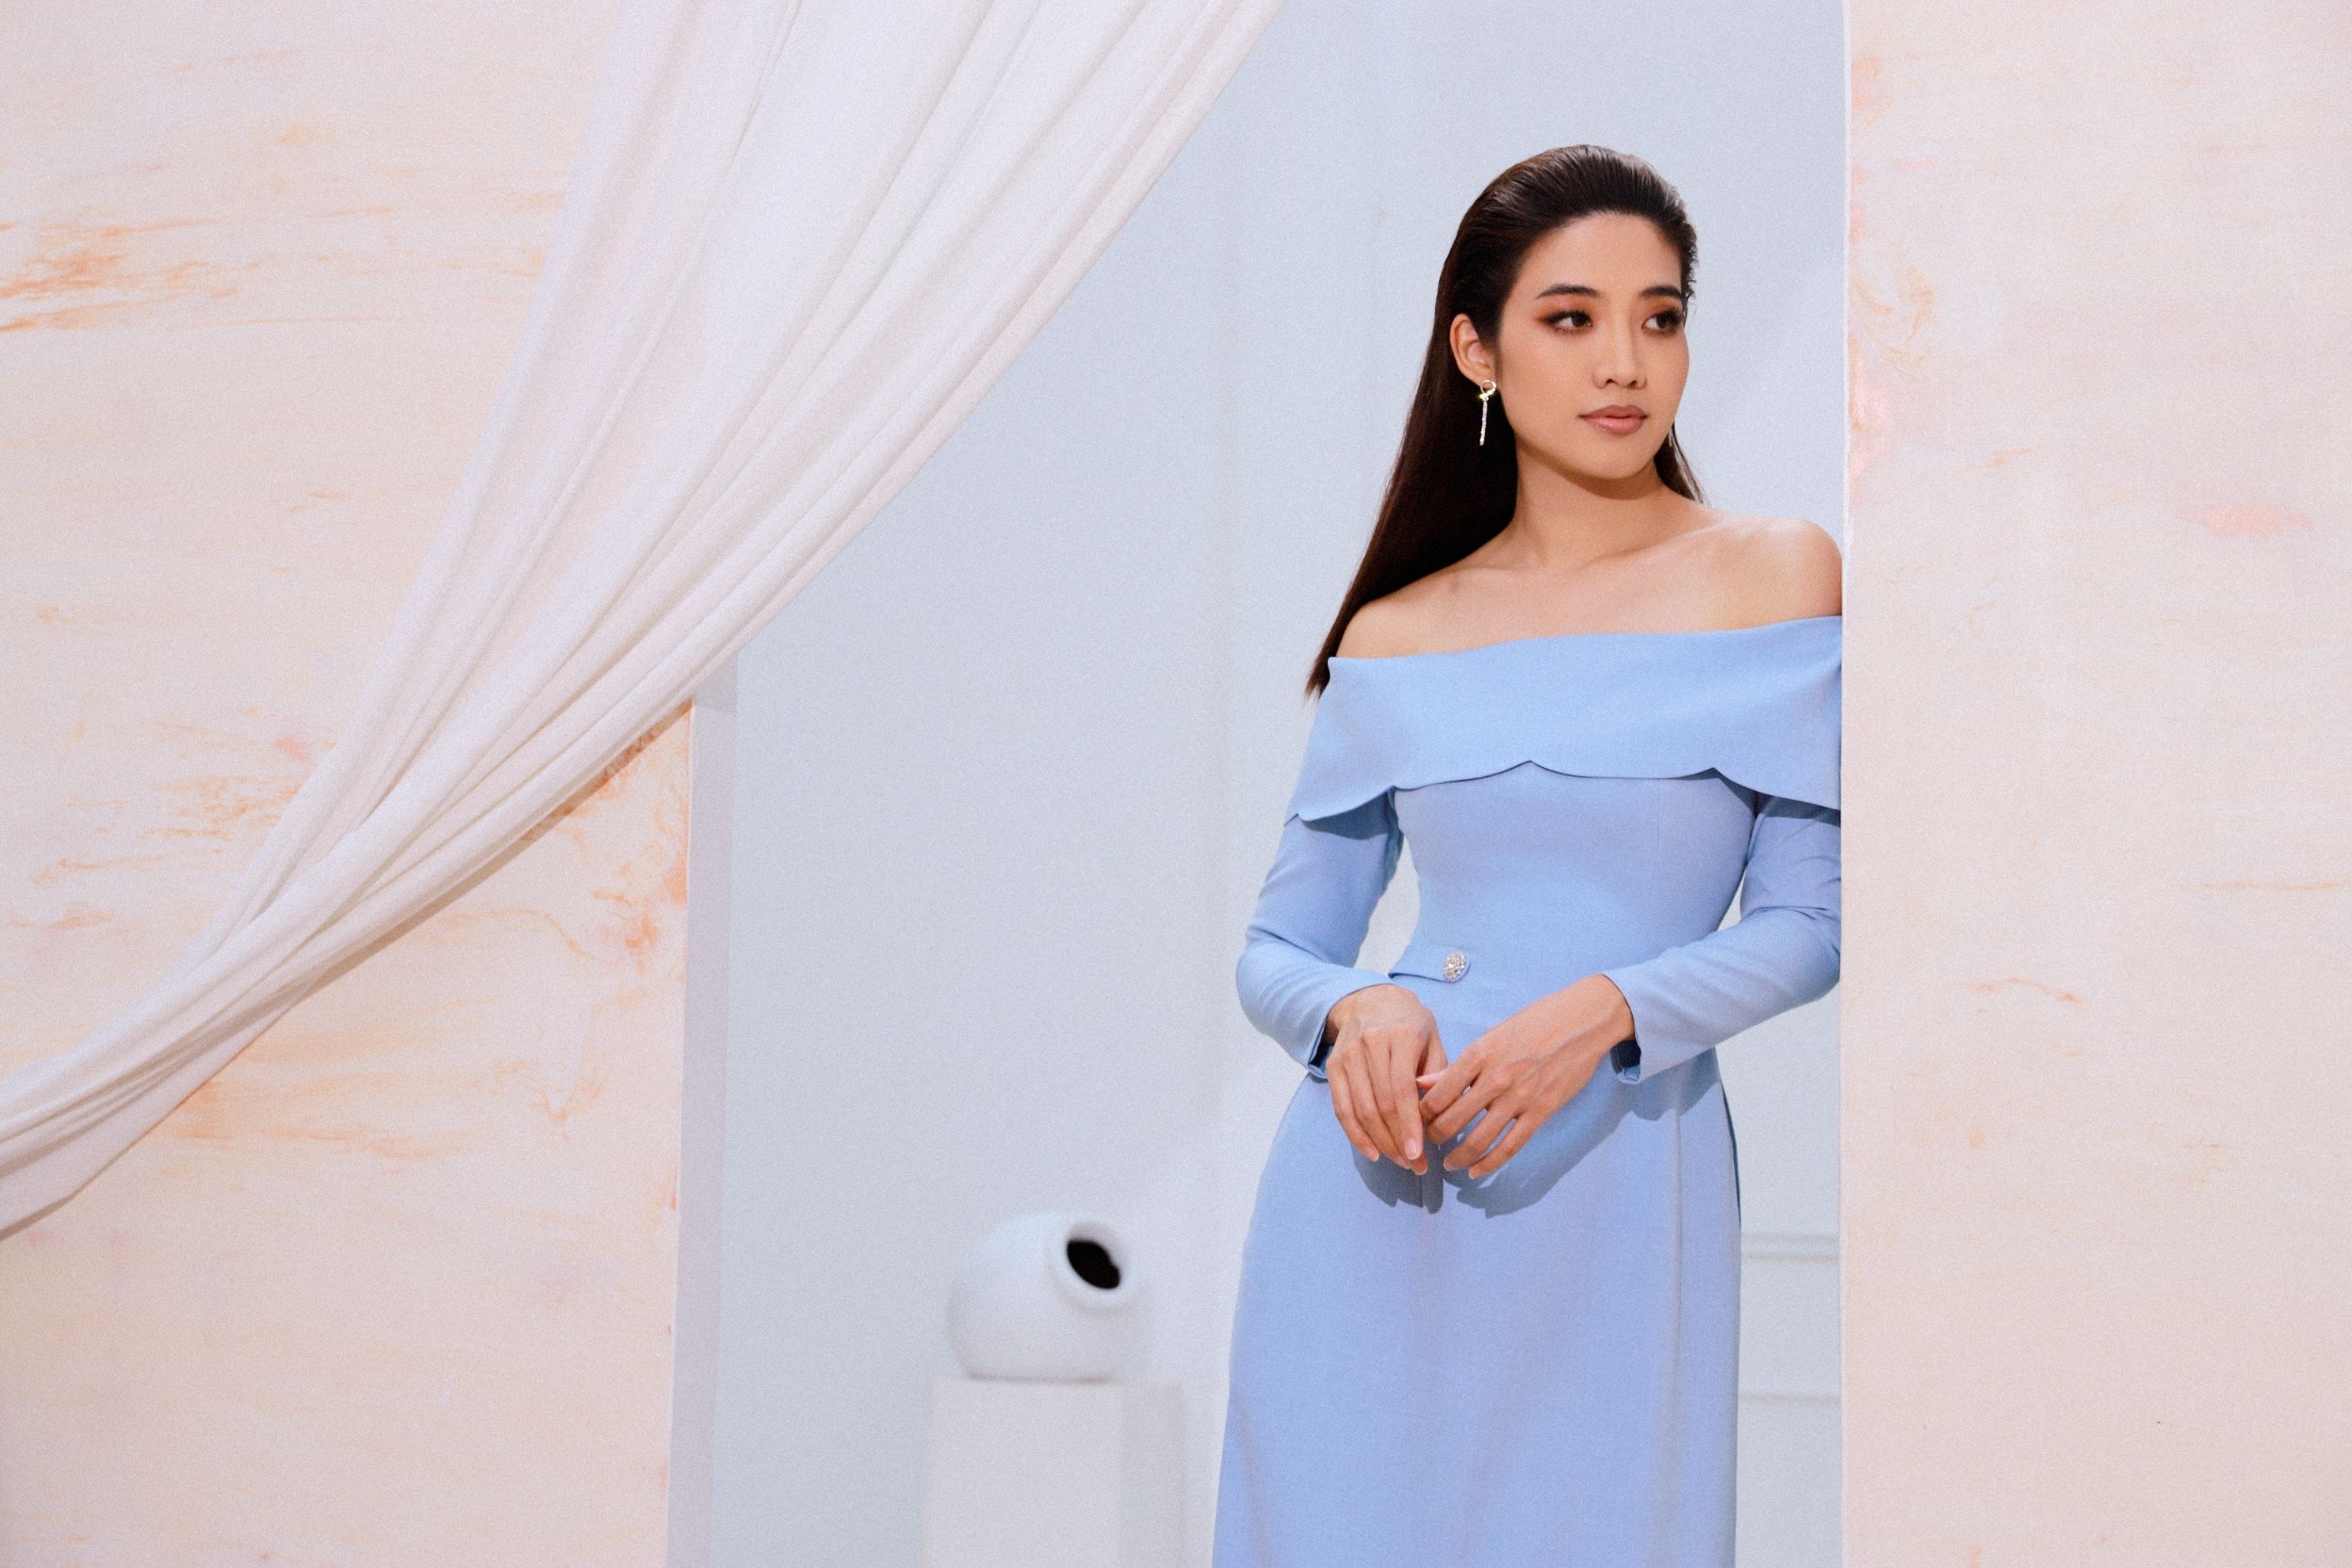 ninh hoang ngan 7 Hoa hậu Ninh Hoàng Ngân gợi ý các mẫu áo dài cách tân đẹp tinh tế cho mùa Tết 2022